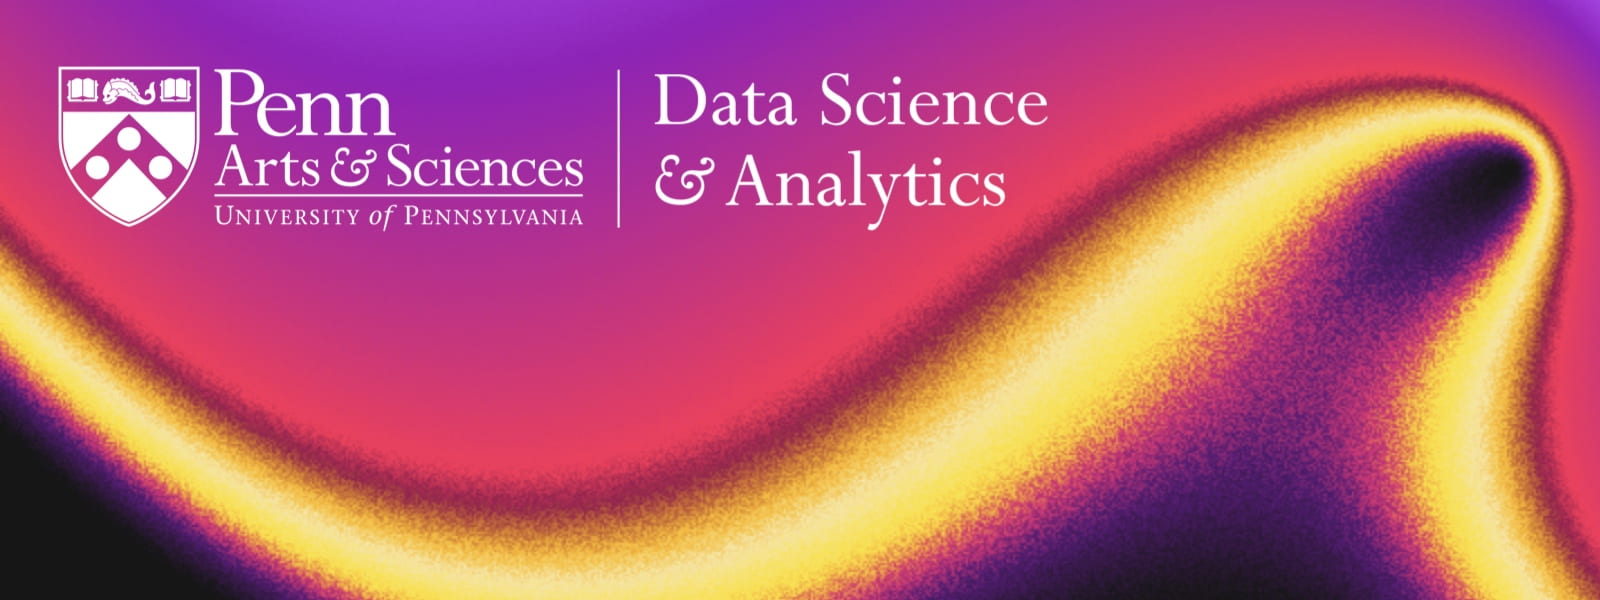 Data Science and Analytics Minor